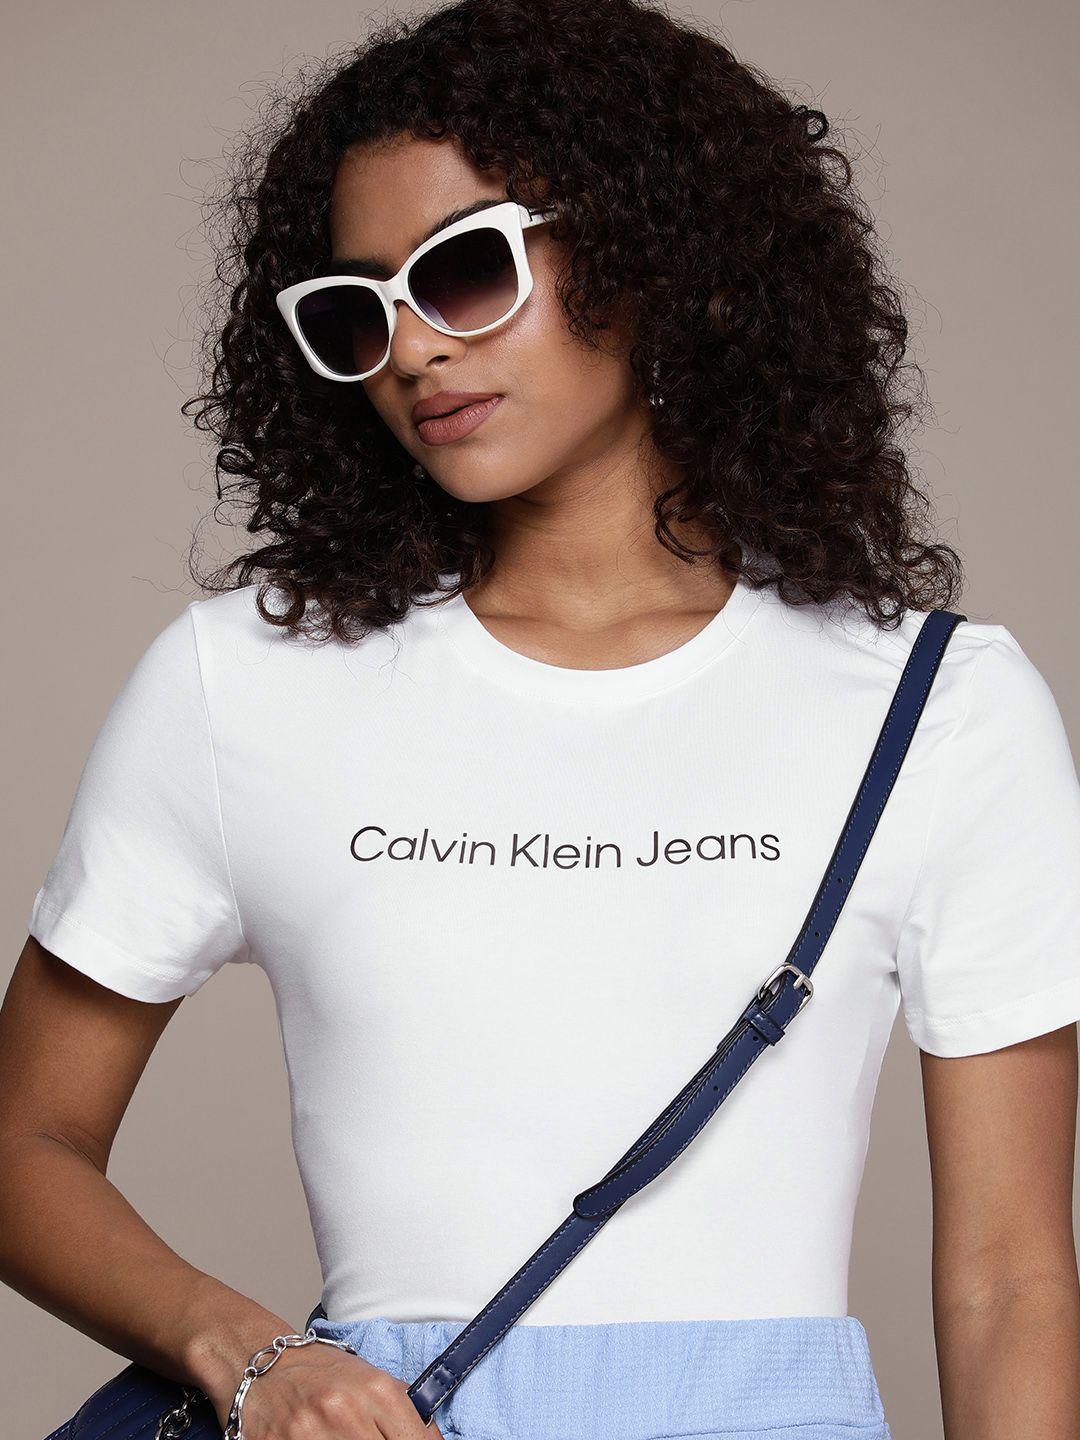 calvin klein jeans women round neck t-shirt with applique detail